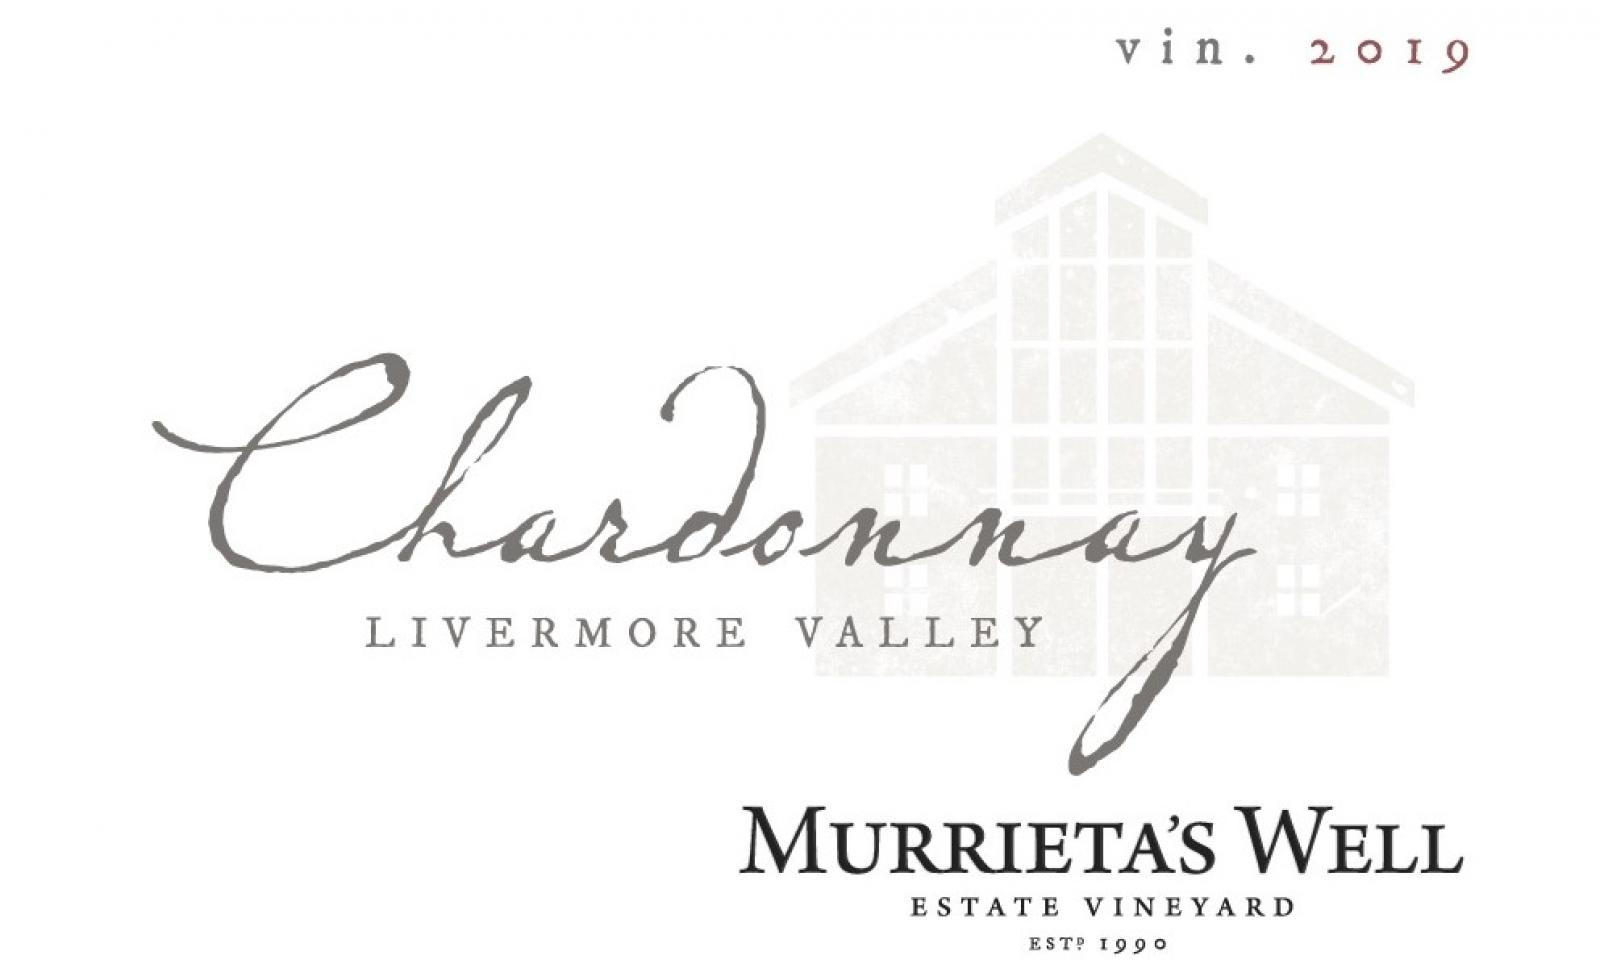 Murrieta's Well Chardonnay 2019